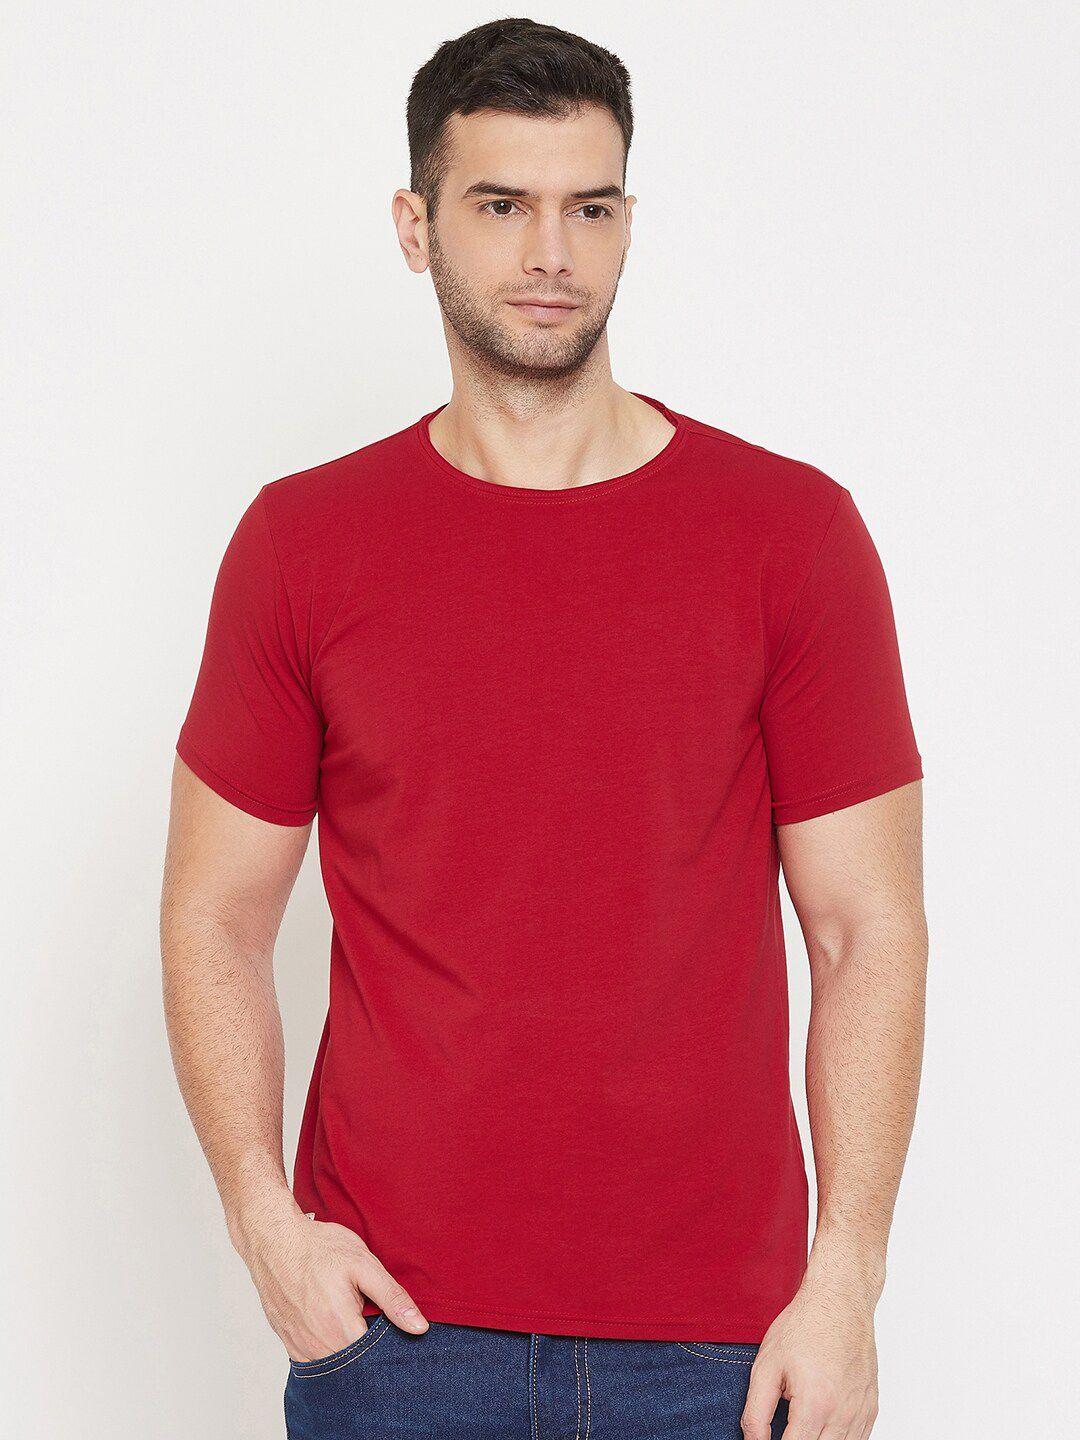 qubic men red cotton t-shirt